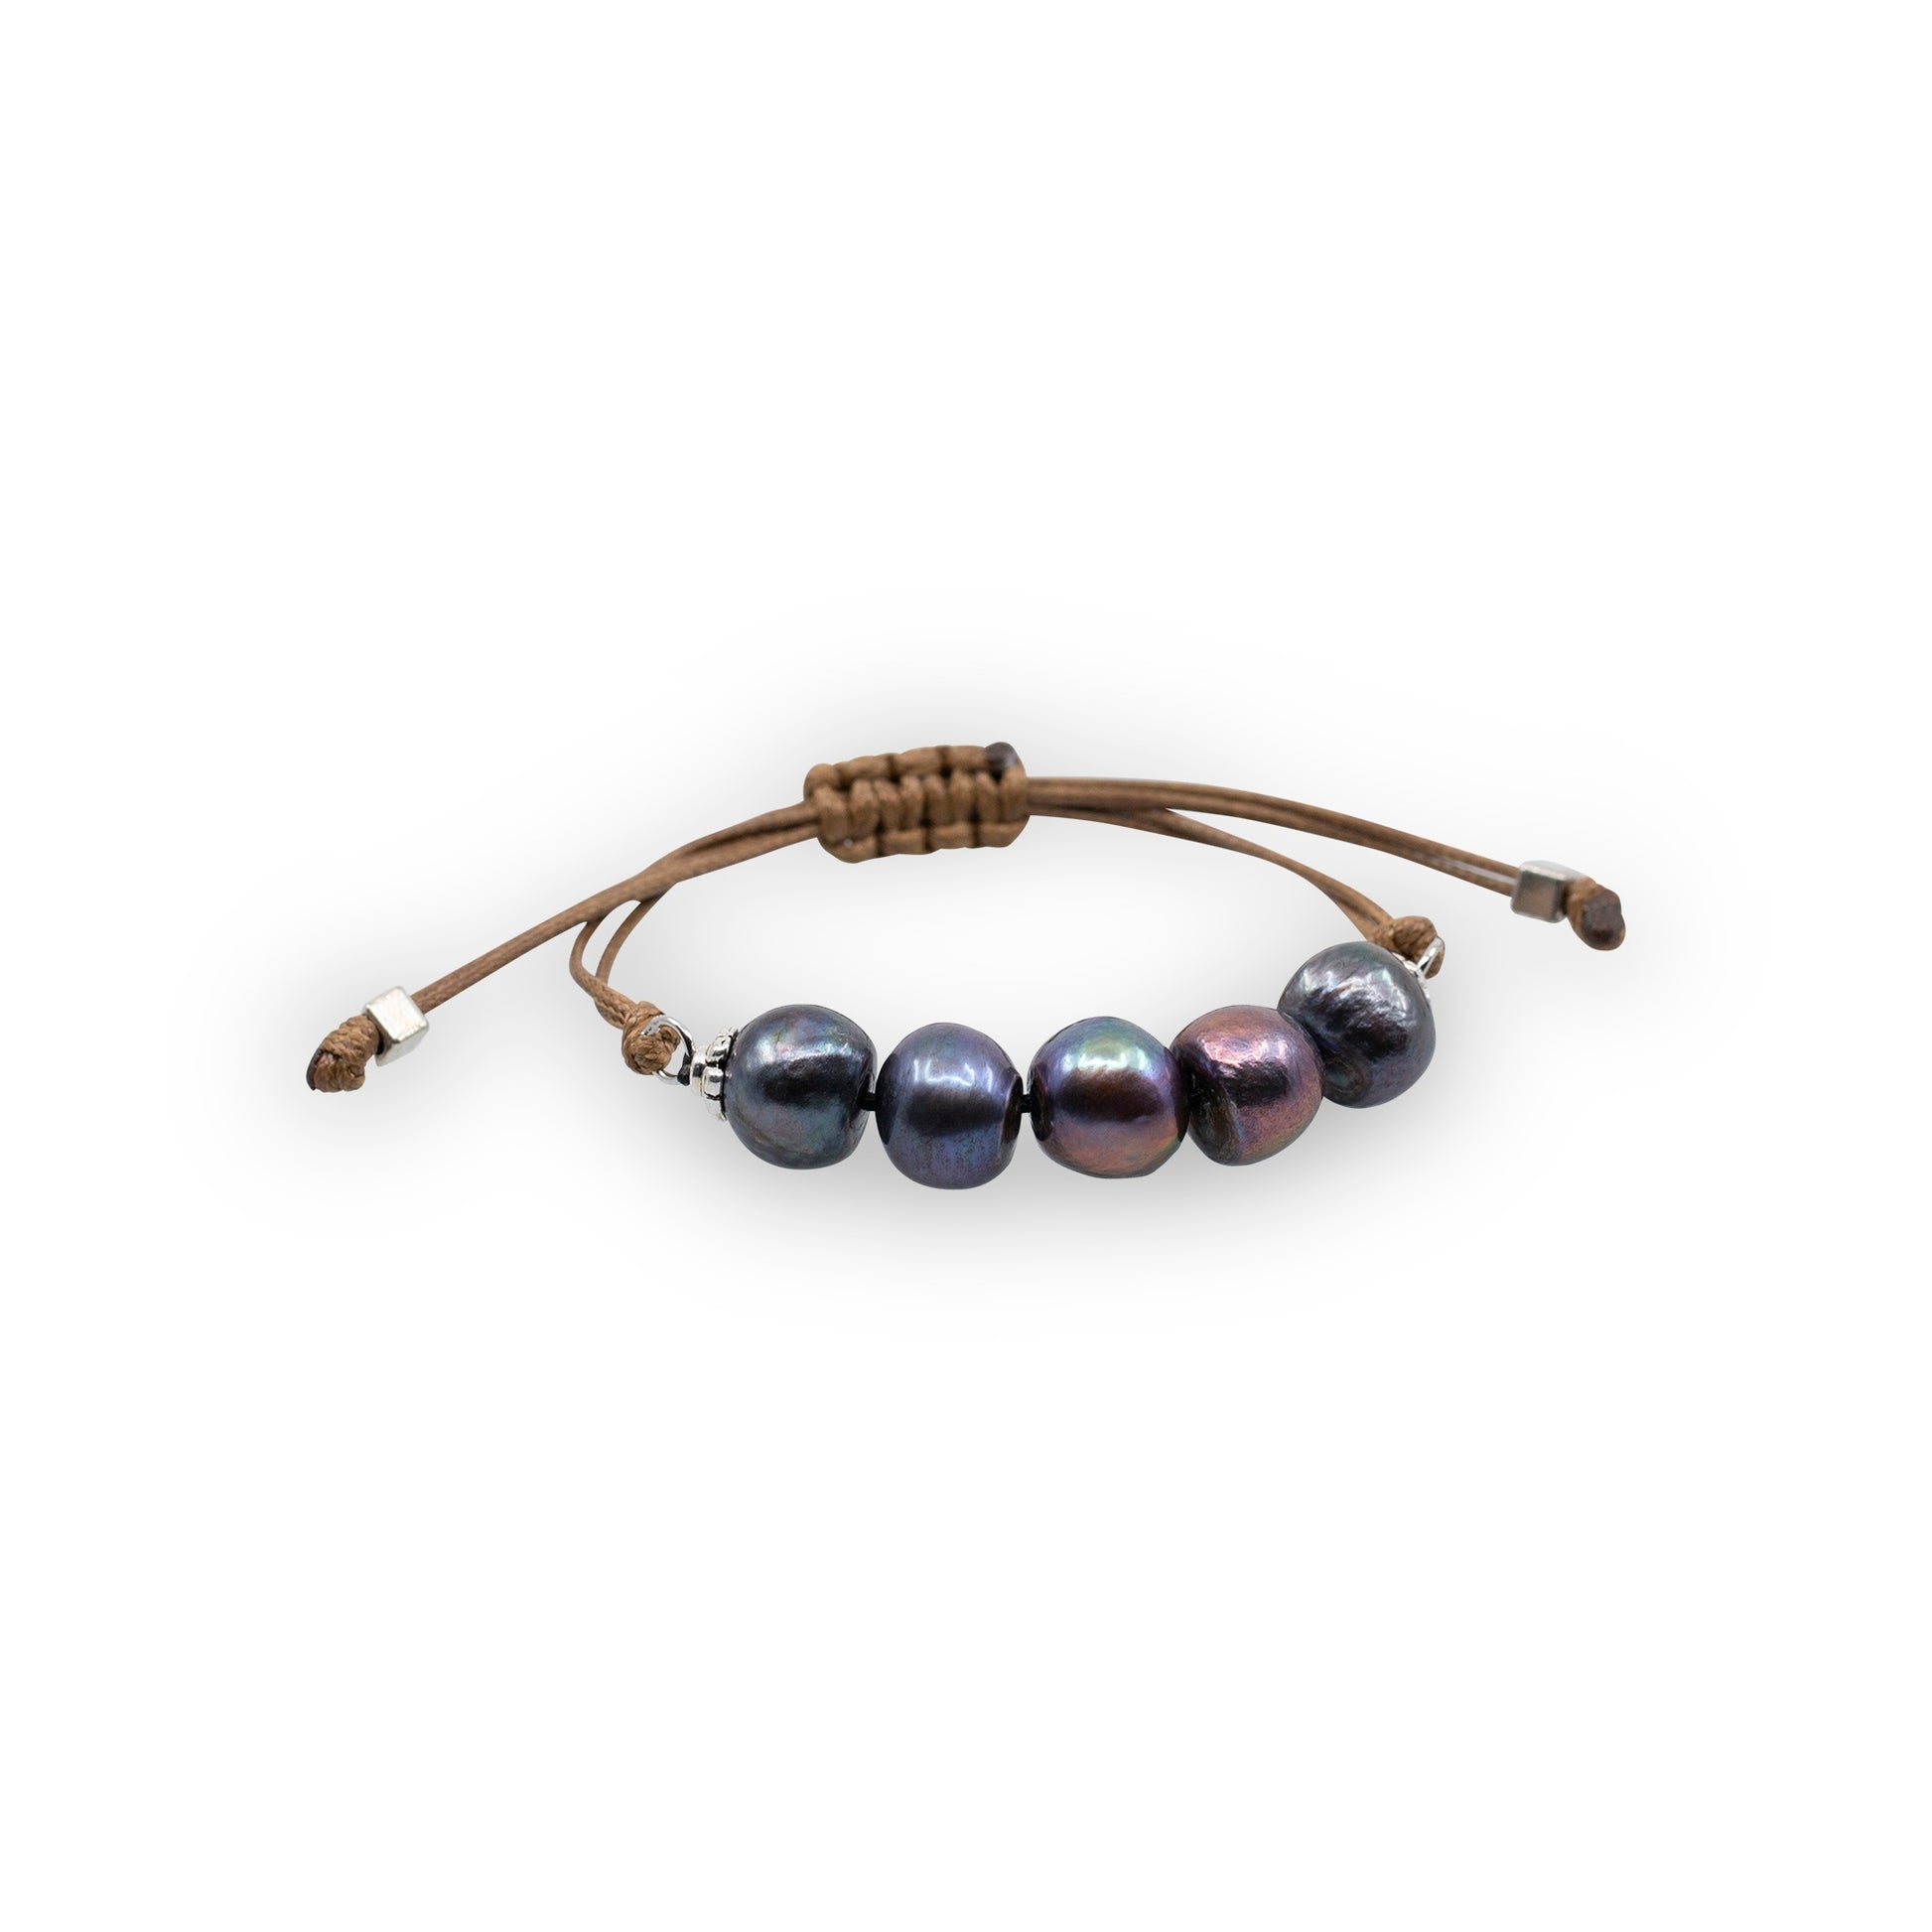 Aegean - Five freshwater pearl adjustable string bracelet (Dark brown strand, dark grey pearls)